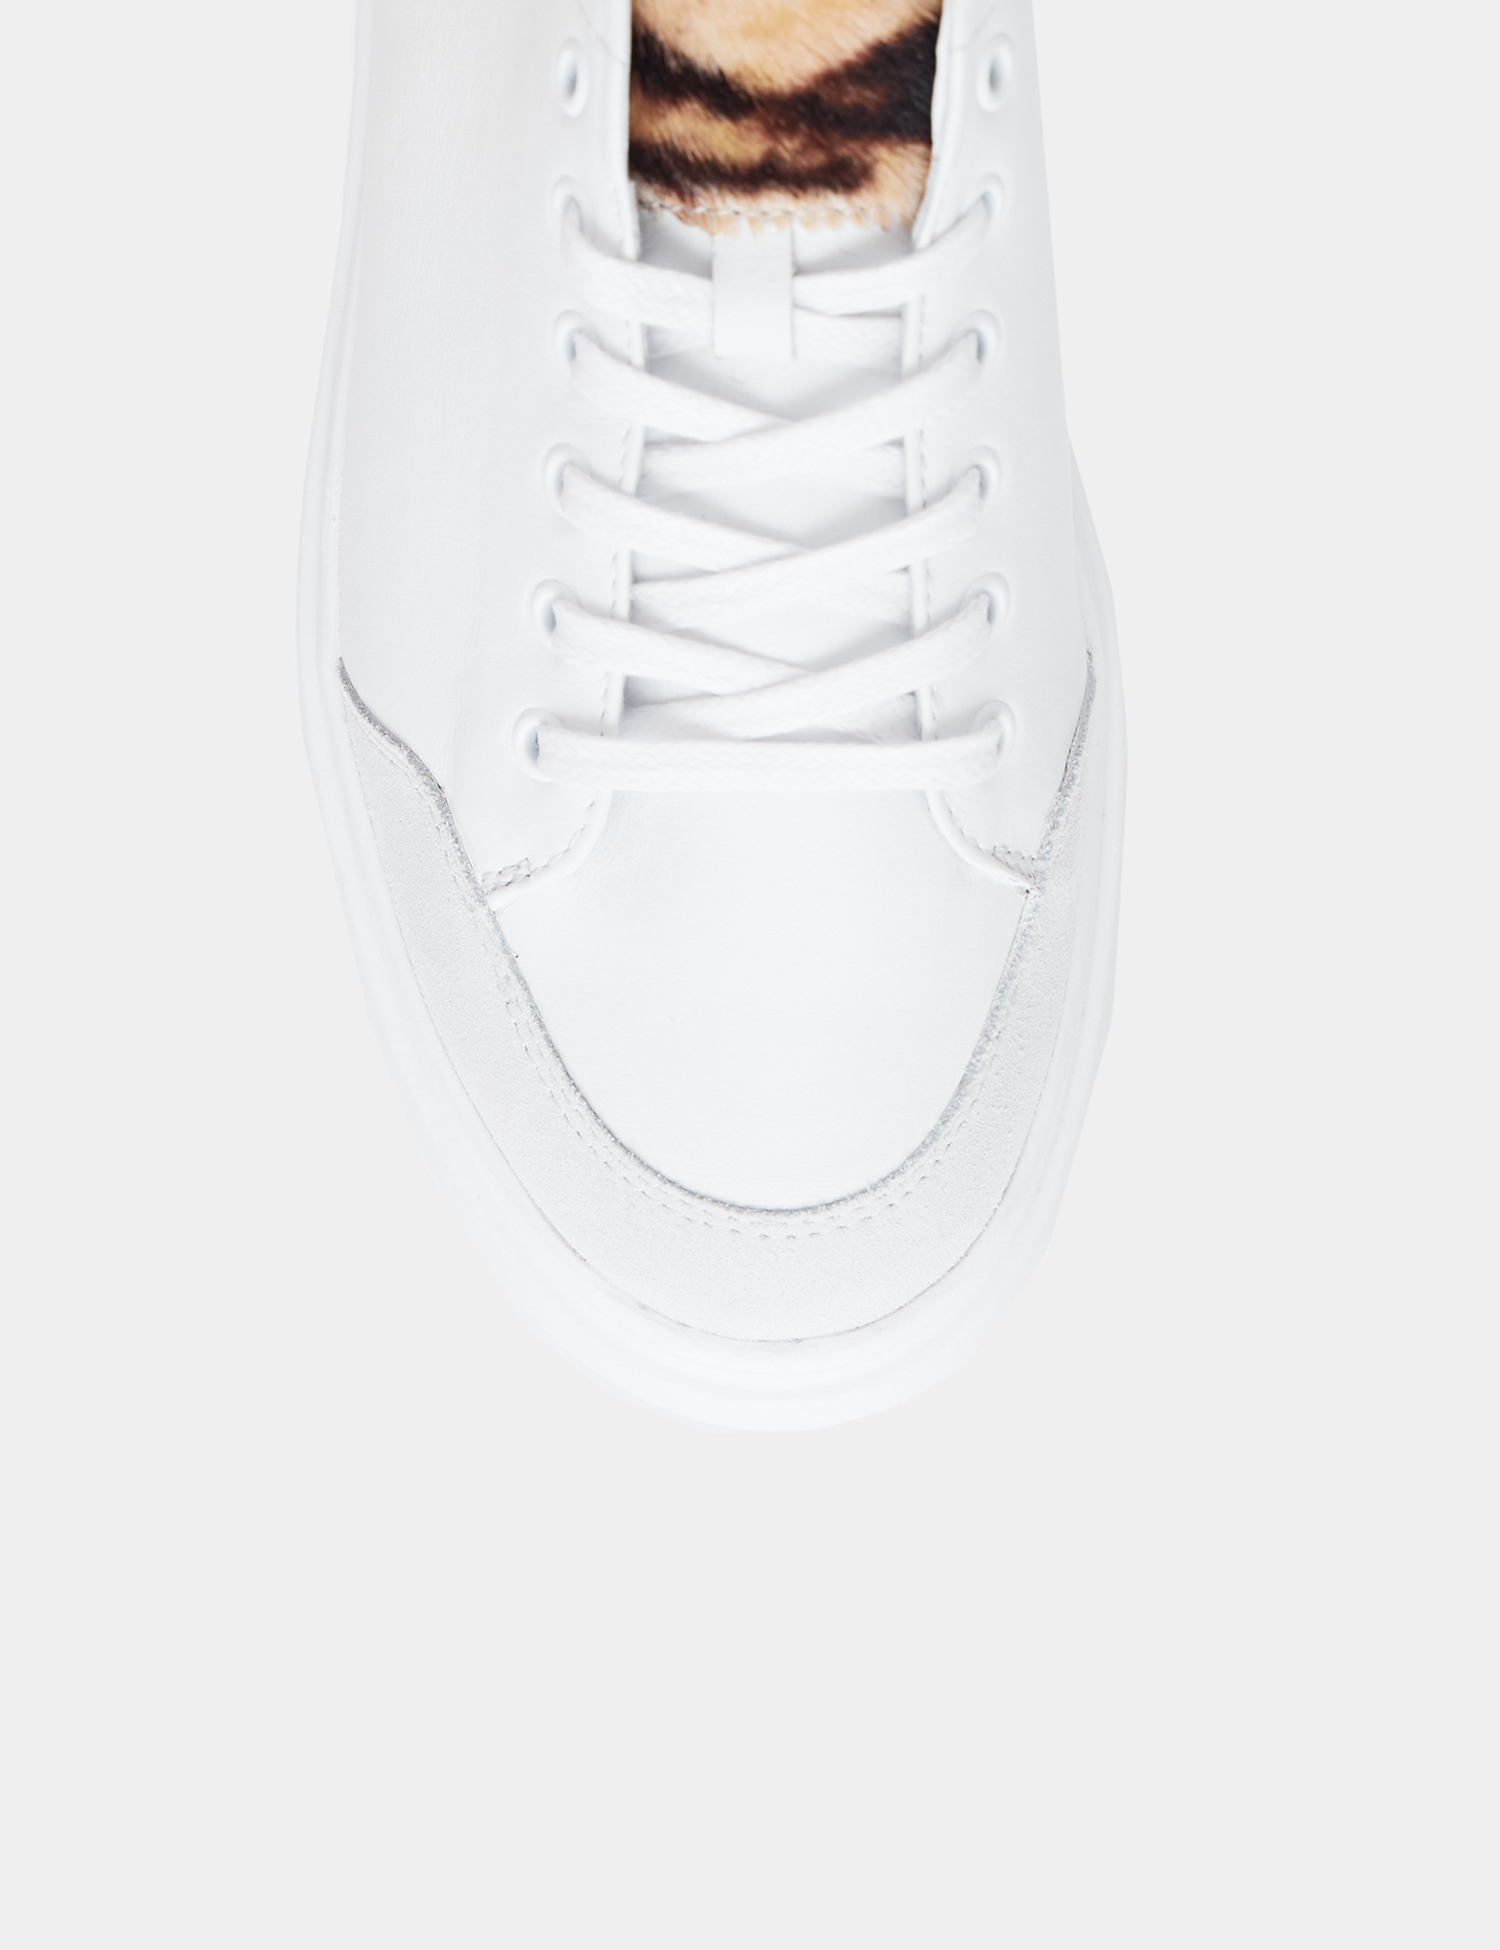 Image Жіночі білі шкіряні кросівки